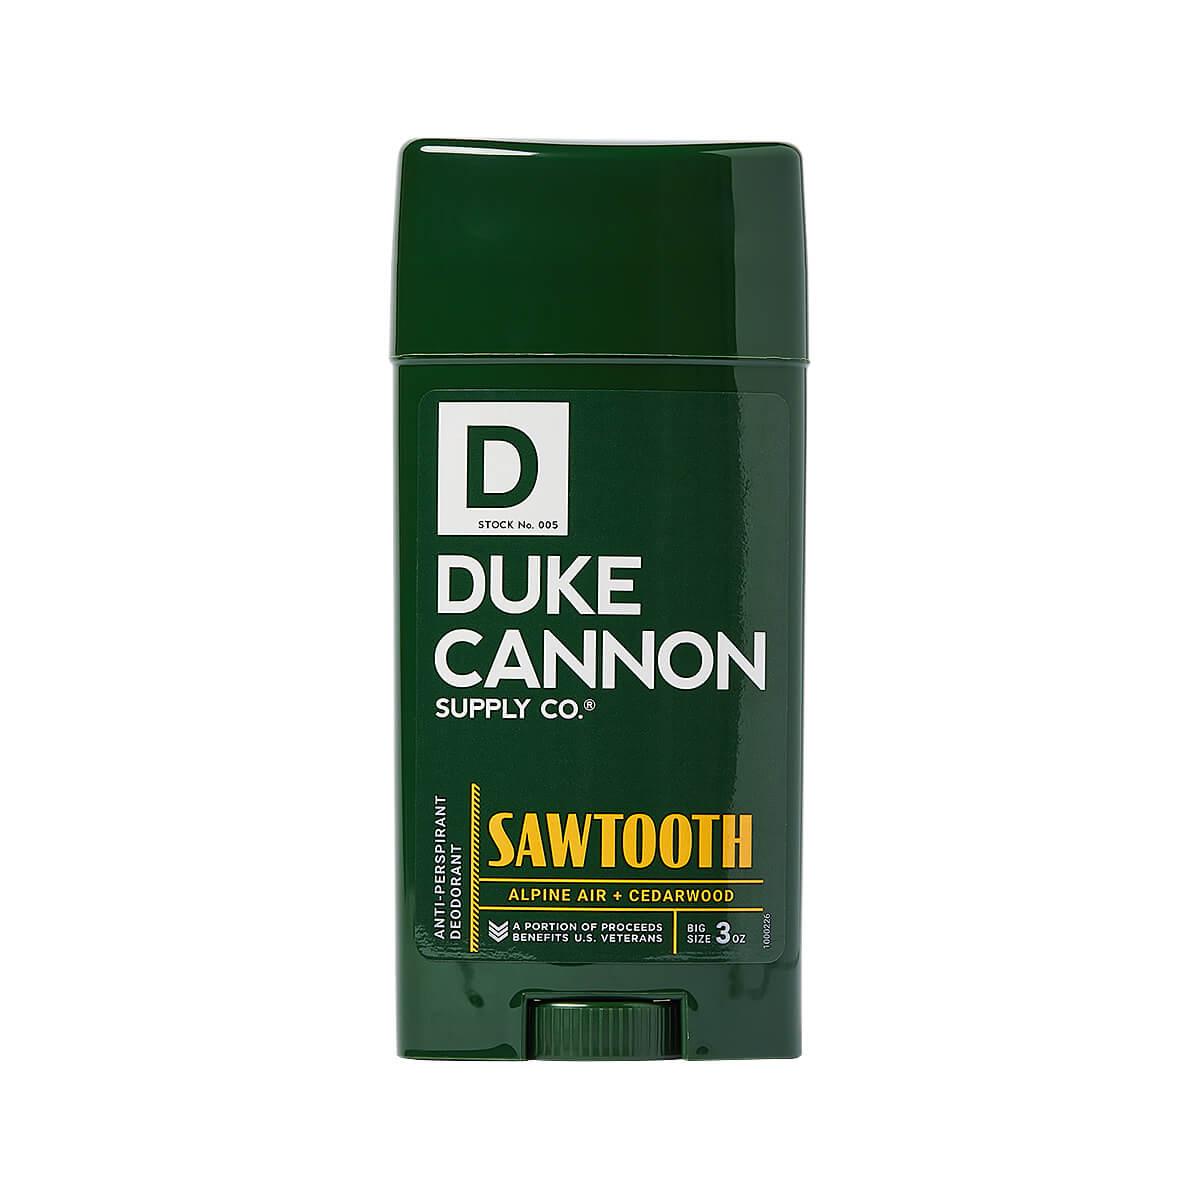  Sawtooth Antiperspirant Deodorant